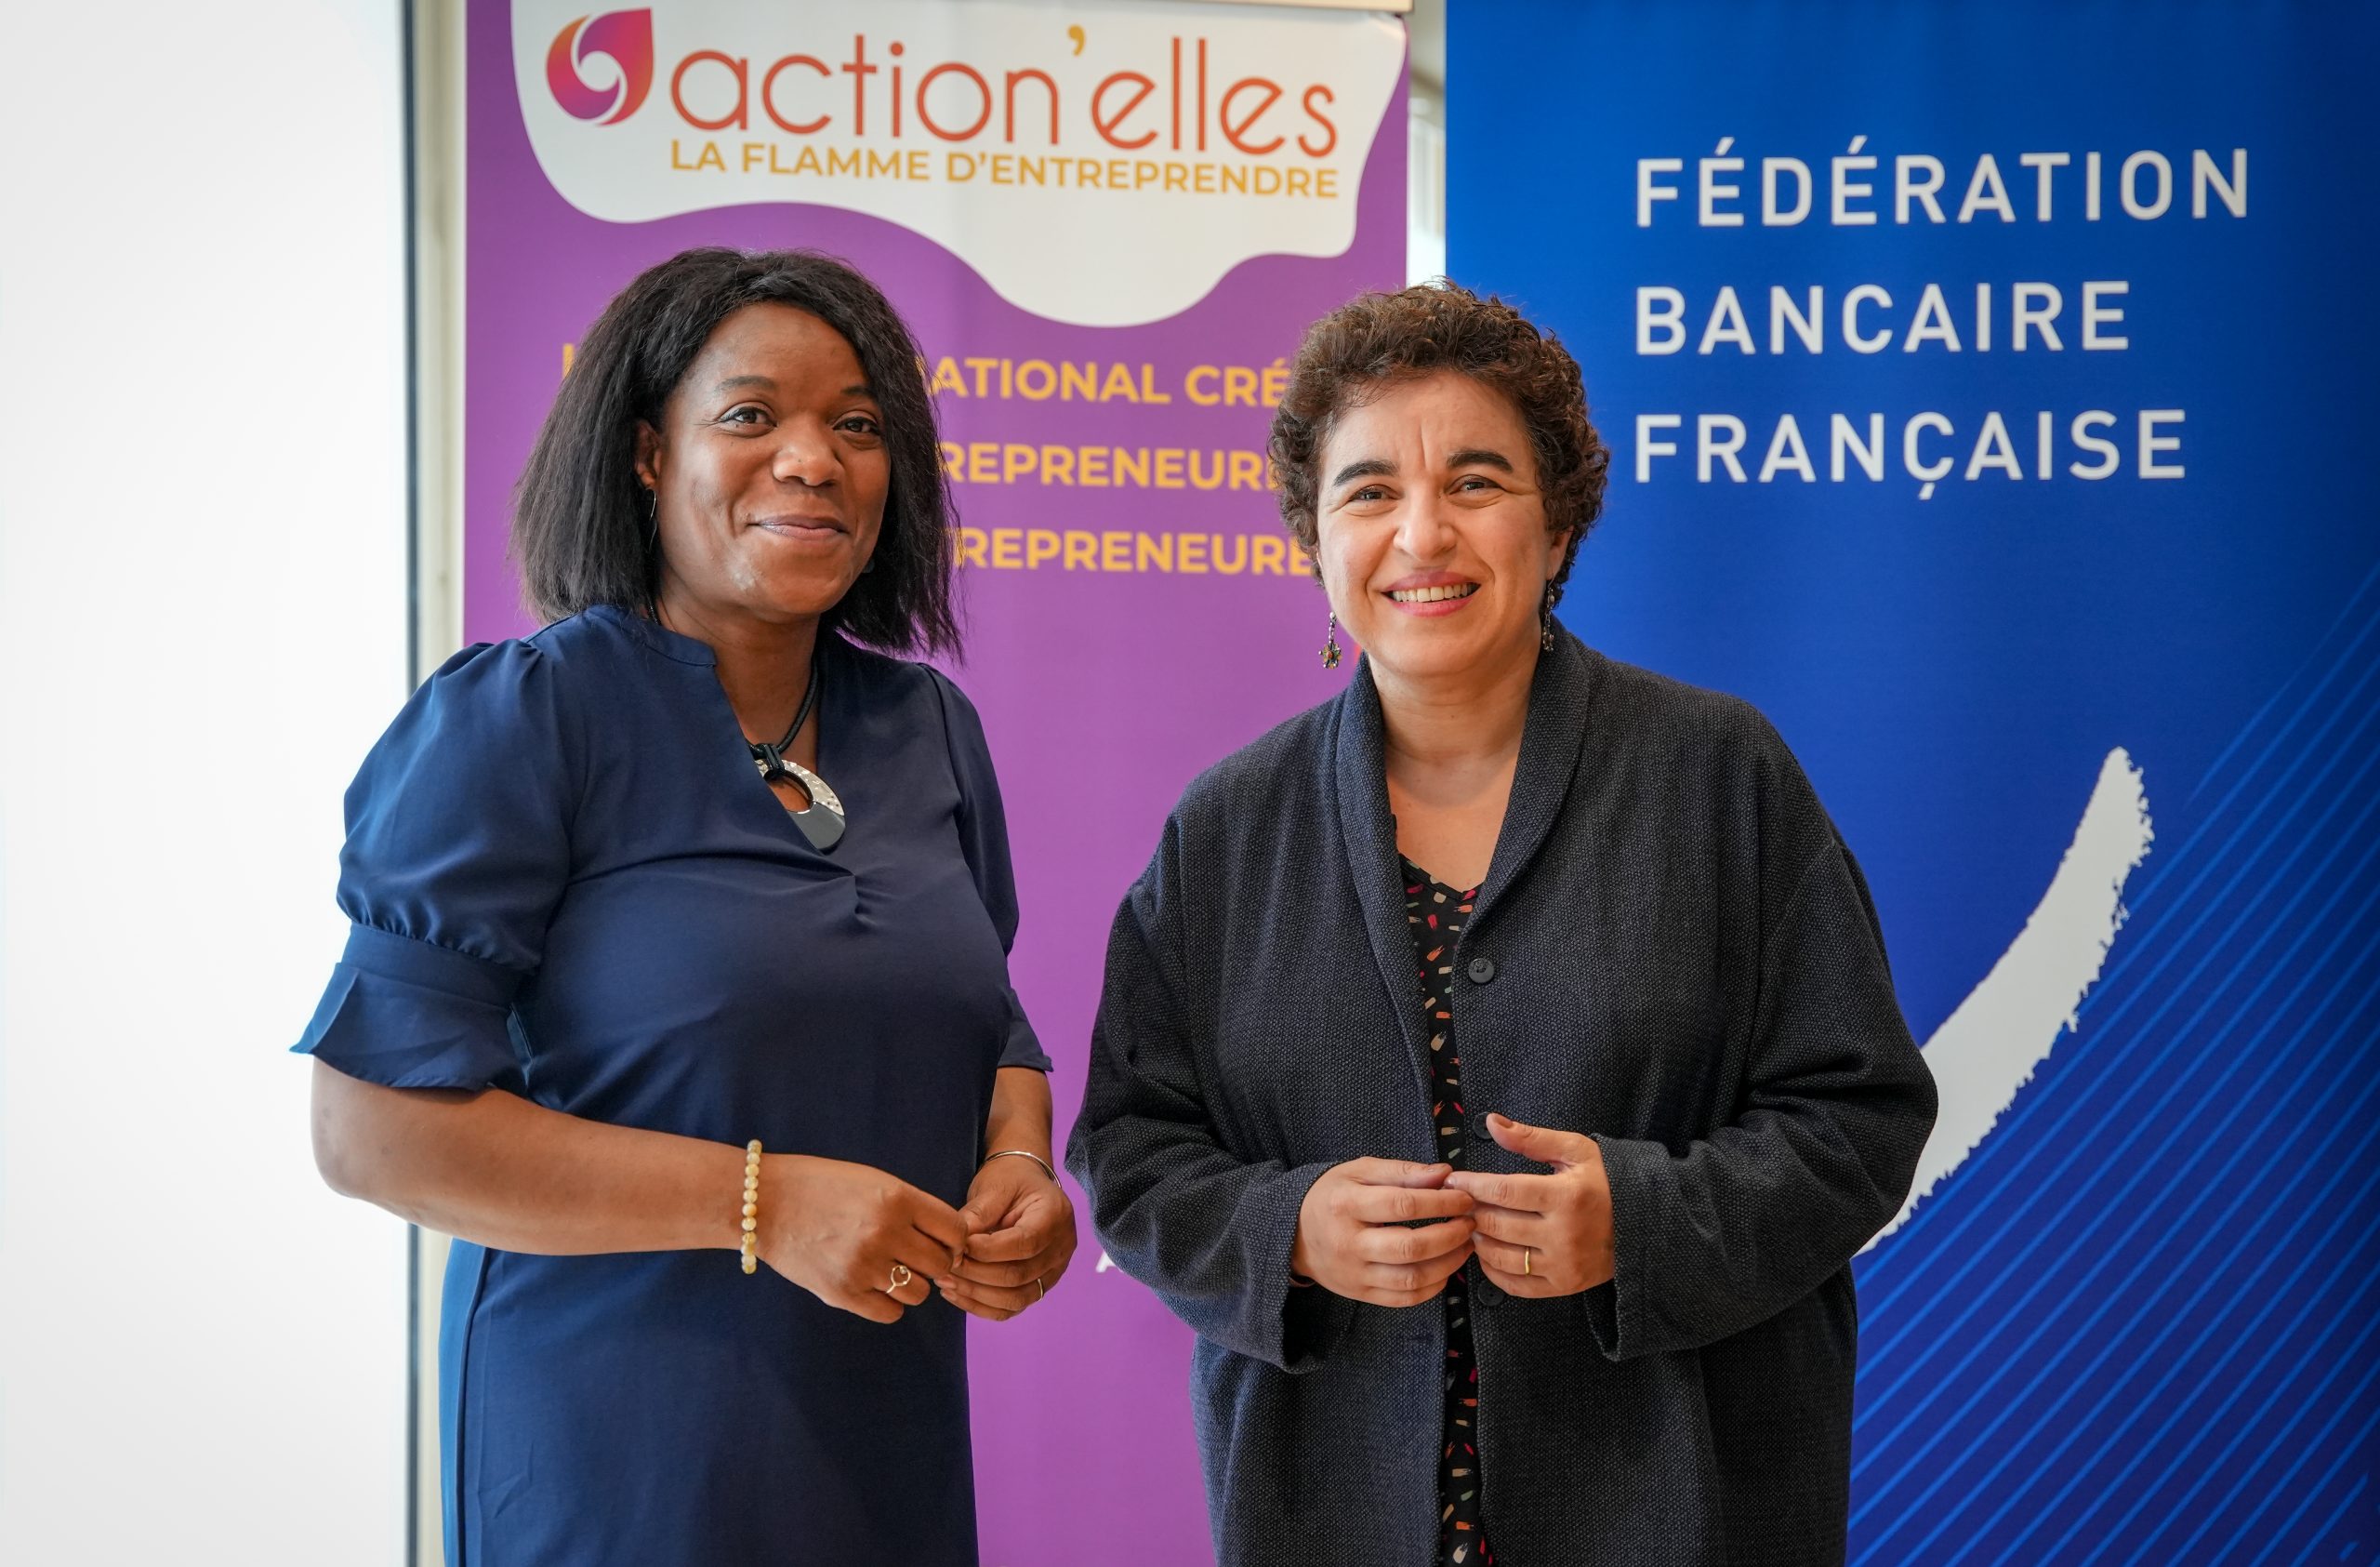 La Fédération bancaire française et Action’elles : un partenariat pour promouvoir l’entrepreneuriat féminin